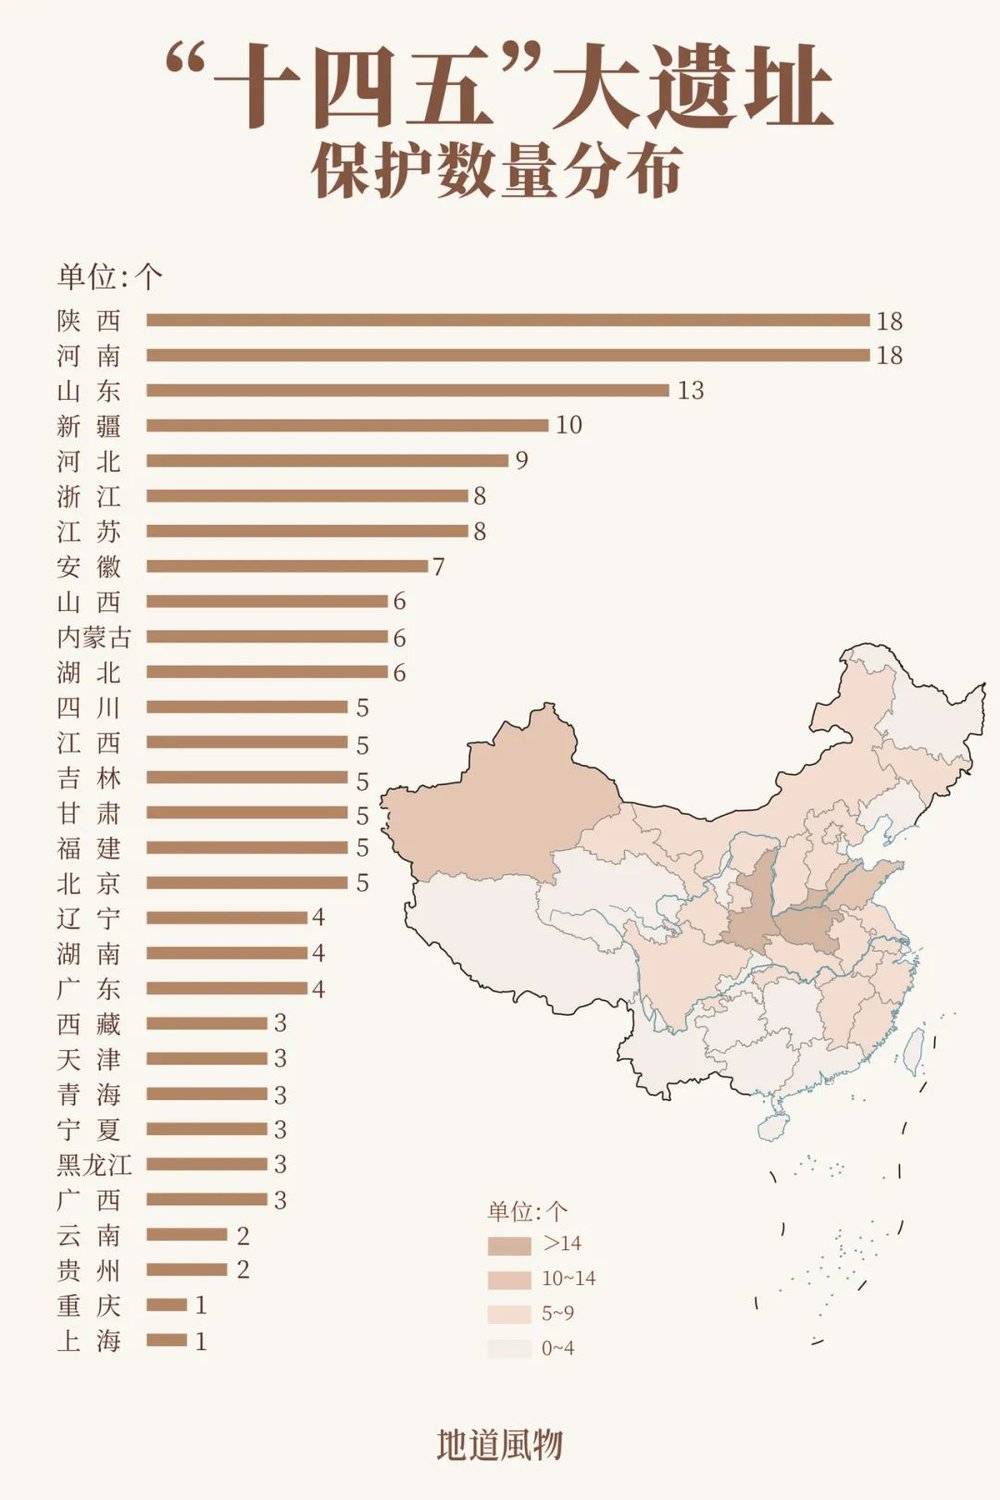 “十四五”大遗址保护数量分布图，陕西和河南并列第一。图中数据合并了组合项目。制图/孙璐